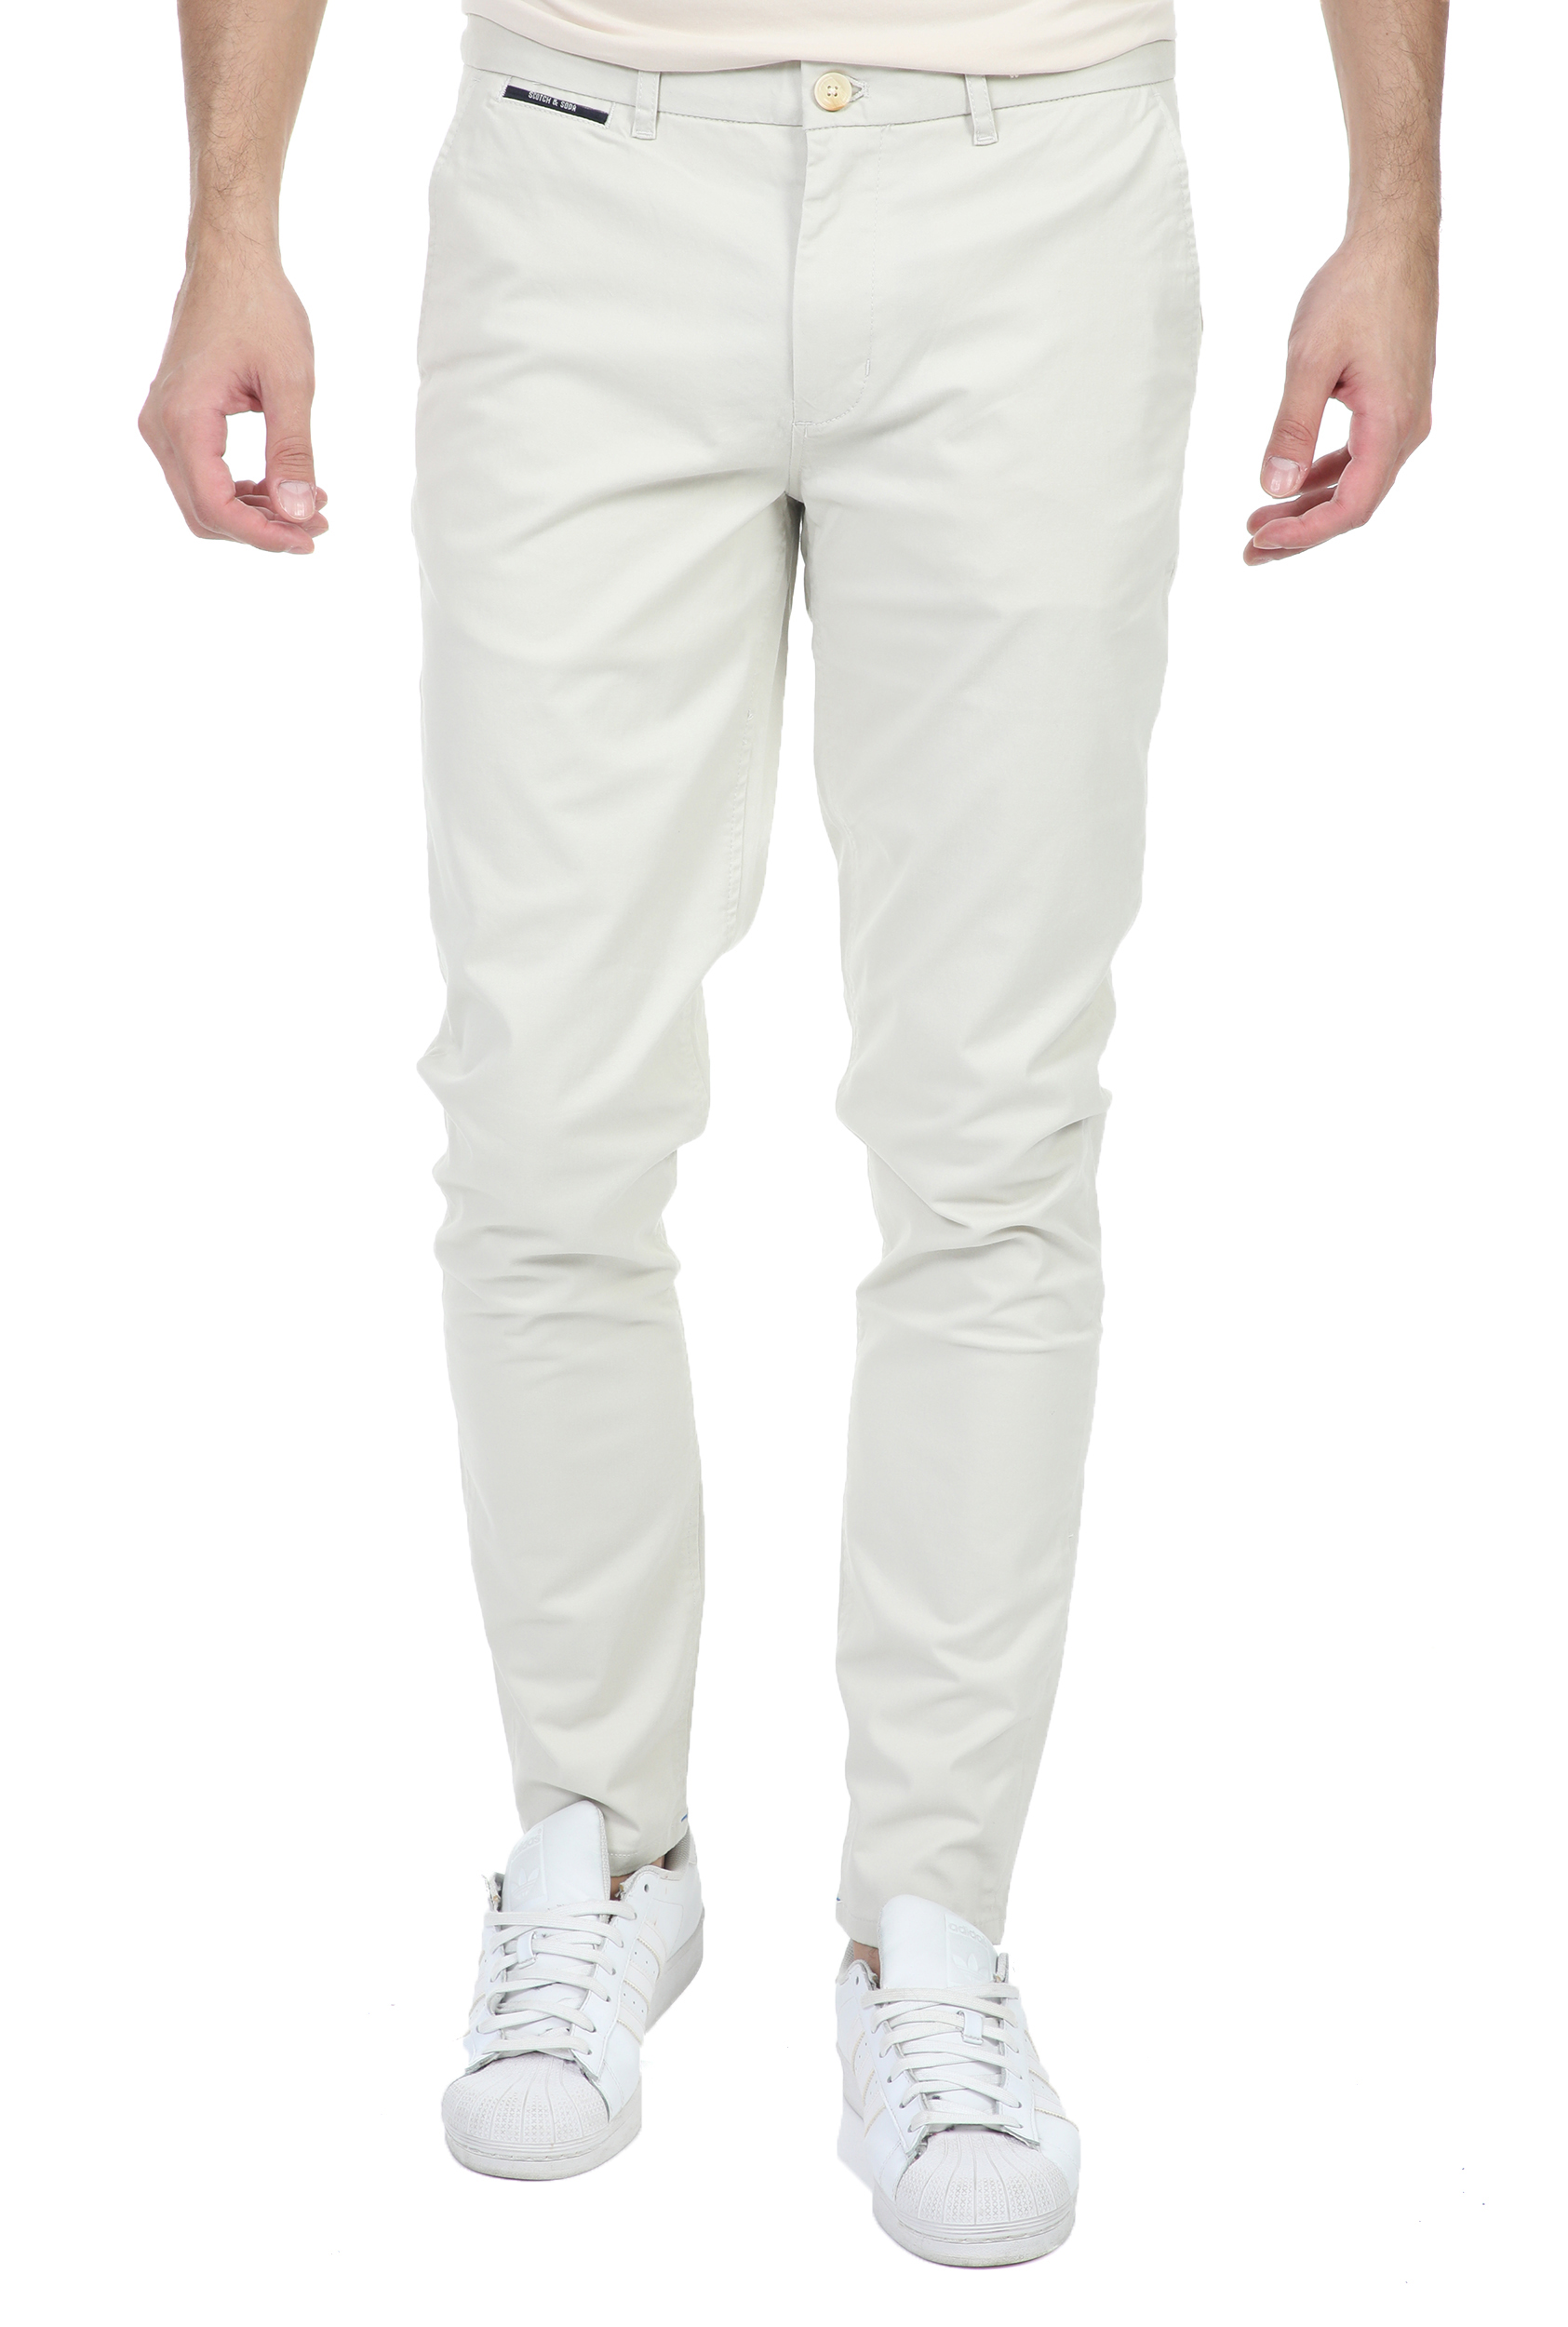 Ανδρικά/Ρούχα/Παντελόνια/Chinos SCOTCH & SODA - Ανδρικό chino παντελόνι SCOTCH & SODA λευκό